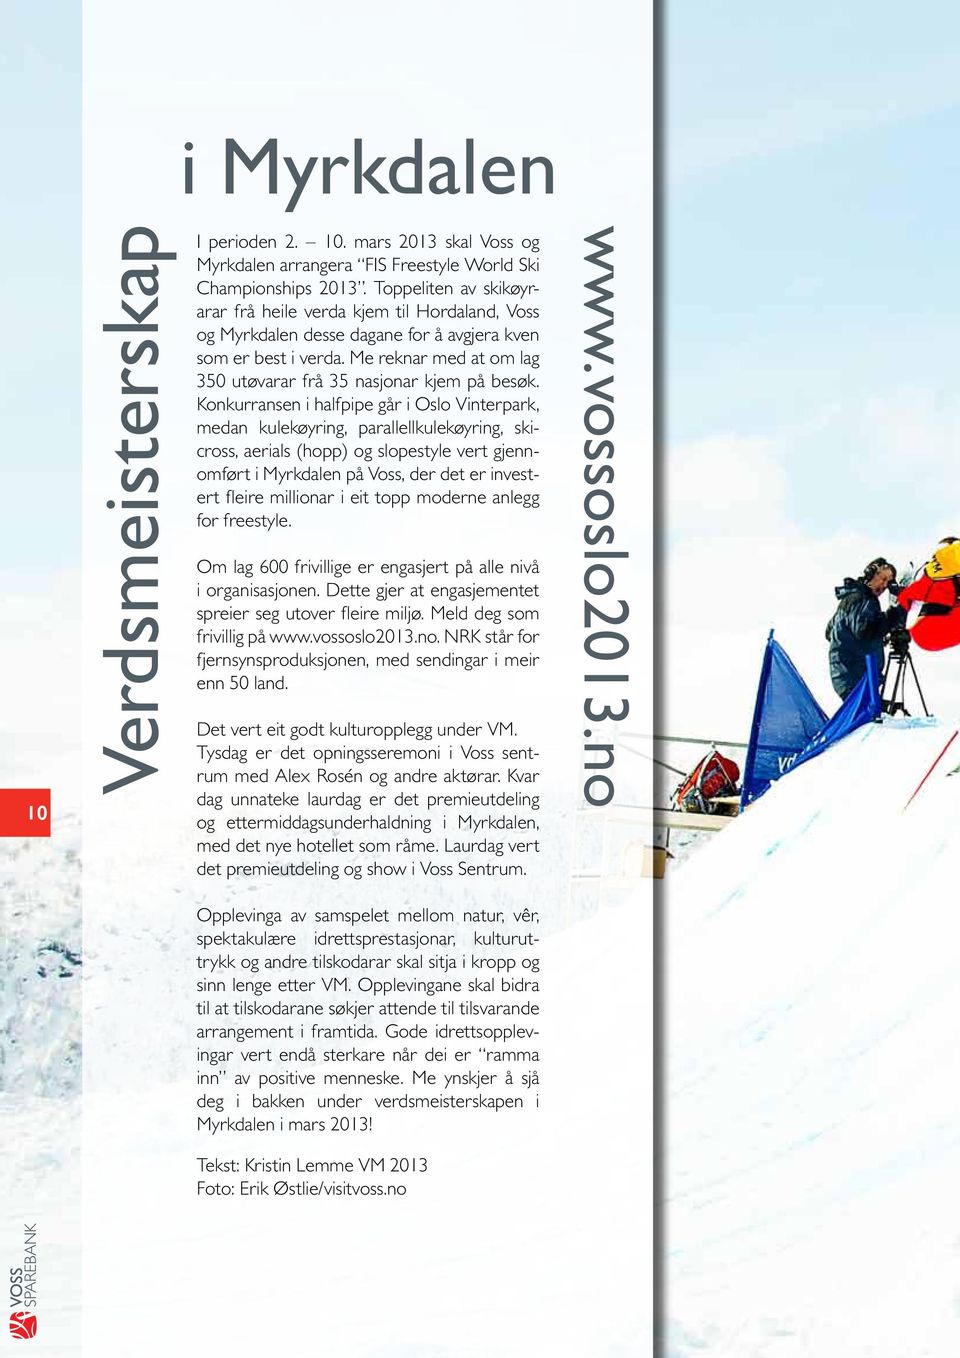 Konkurransen i halfpipe går i Oslo Vinterpark, medan kulekøyring, parallellkulekøyring, skicross, aerials (hopp) og slopestyle vert gjennomført i Myrkdalen på Voss, der det er investert fleire